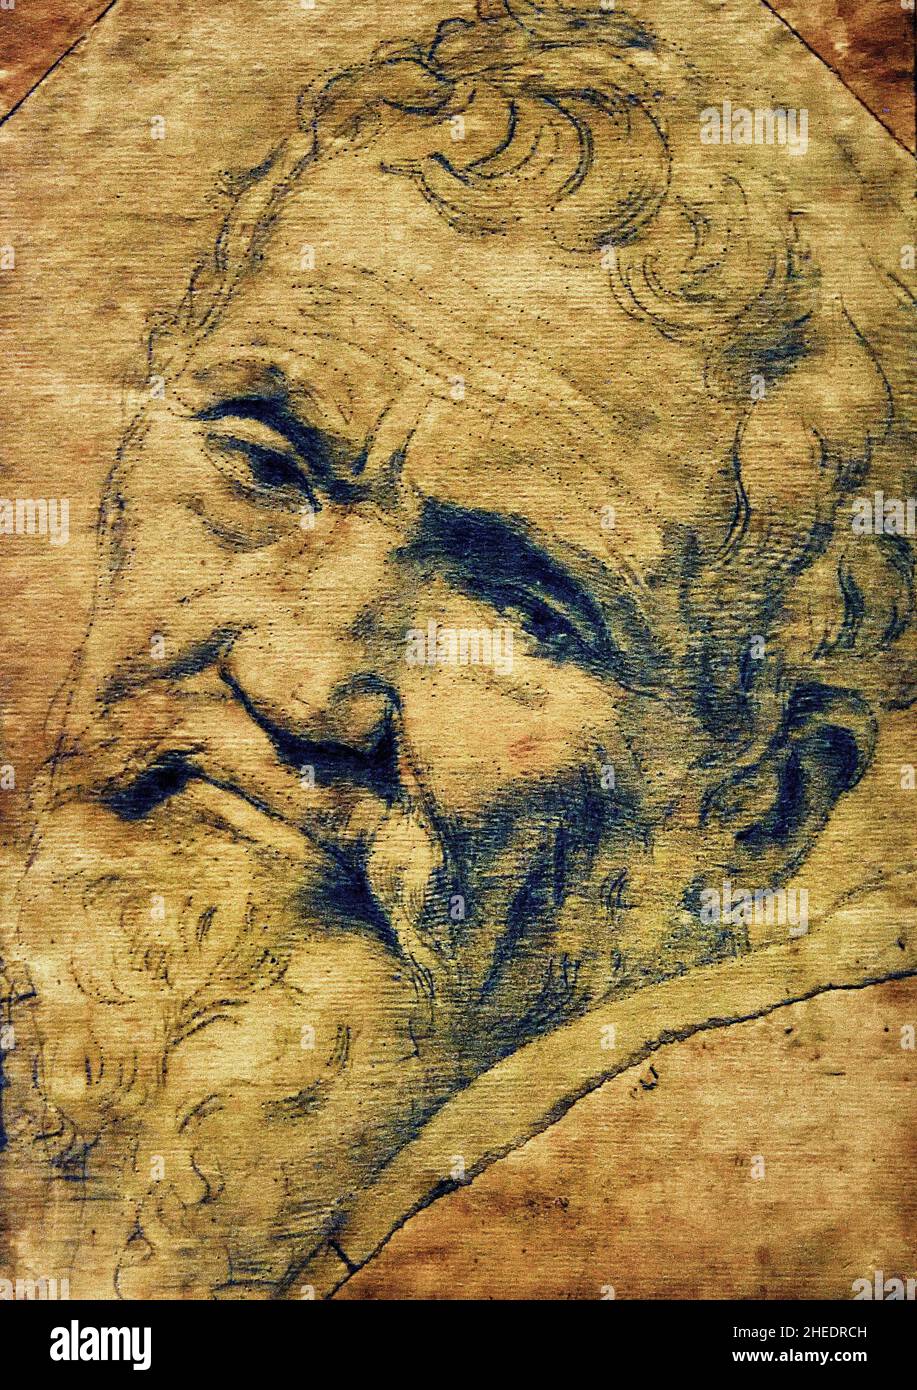 Daniele da Volterra (1509-1566) Roma ca 1550-1553 von Michelangelo ( Michelangelo di Lodovico Buonarroti Simoni ) 1475 –1564 Florentiner Bildhauer, Maler, Architekt und Dichter der Hochrenaissance . Florenz Italien Italienisch Stockfoto